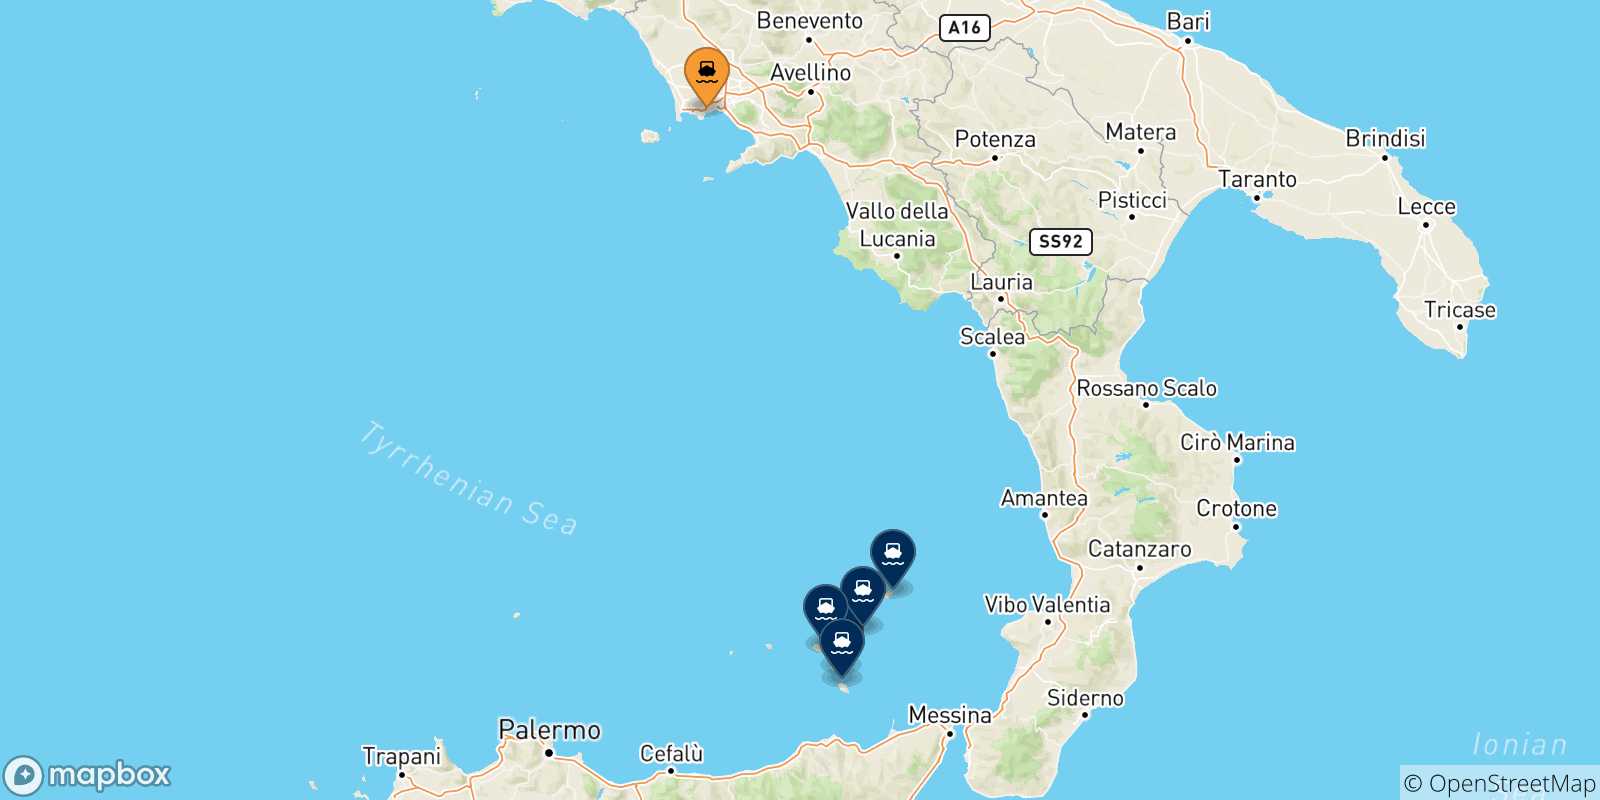 Mappa delle possibili rotte tra Napoli Mergellina e le Isole Eolie